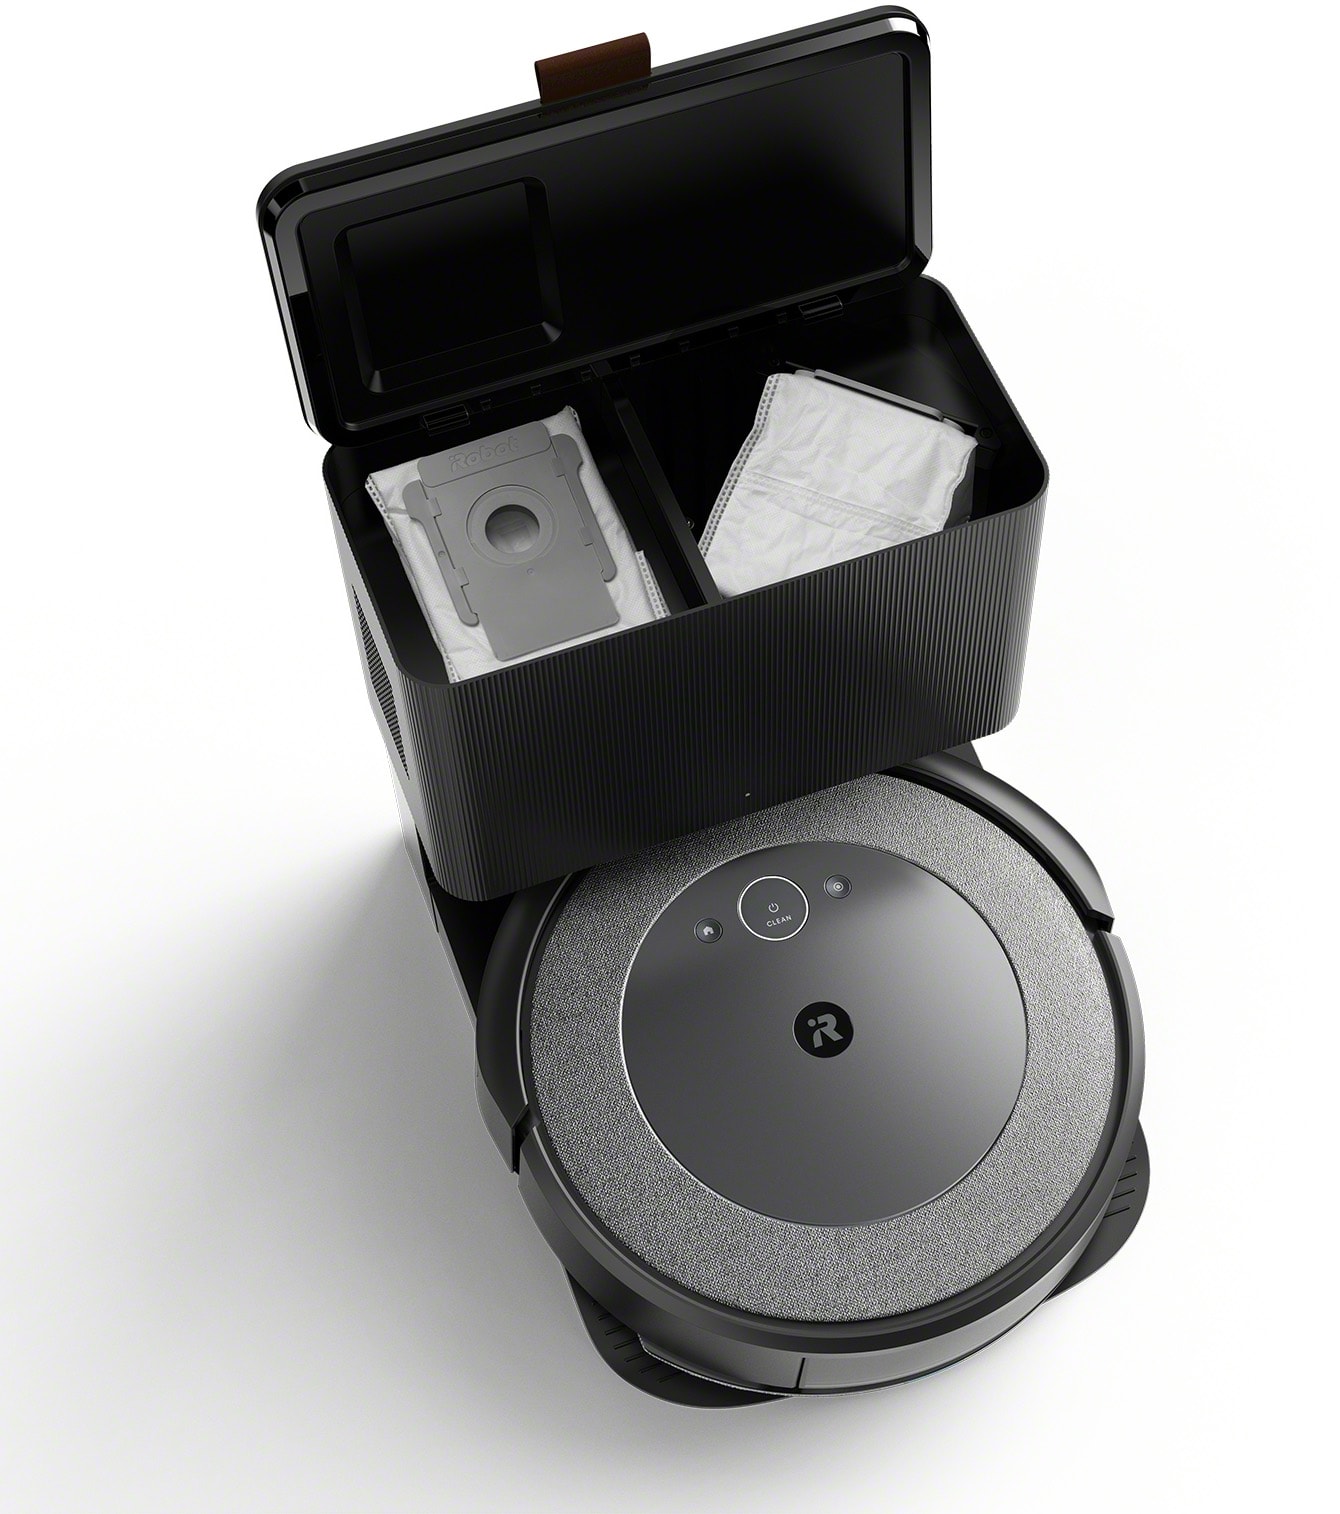 Roomba Combo i5 : ce robot aspirateur de la marque iRobot est à